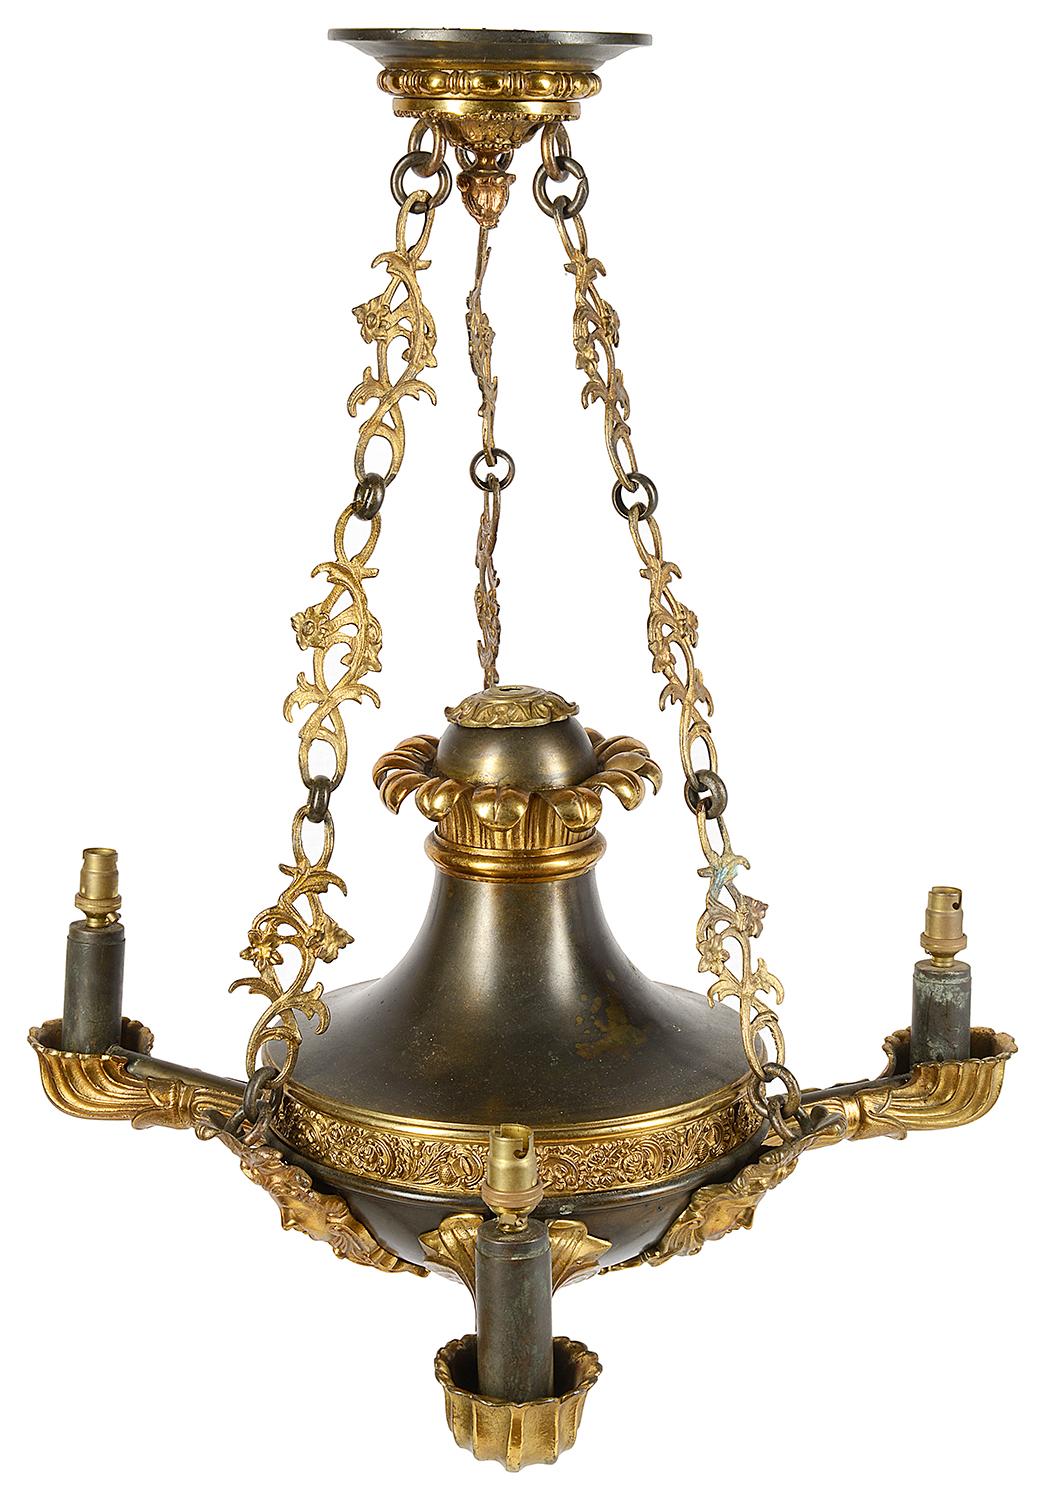 Un lustre de bonne qualité du 19ème siècle en bronze et bronze doré d'influence Empire français. La rosace de plafond est de style classique, avec trois chaînons feuillus reliés entre eux, soutenant le lustre à trois branches, avec trois masques,